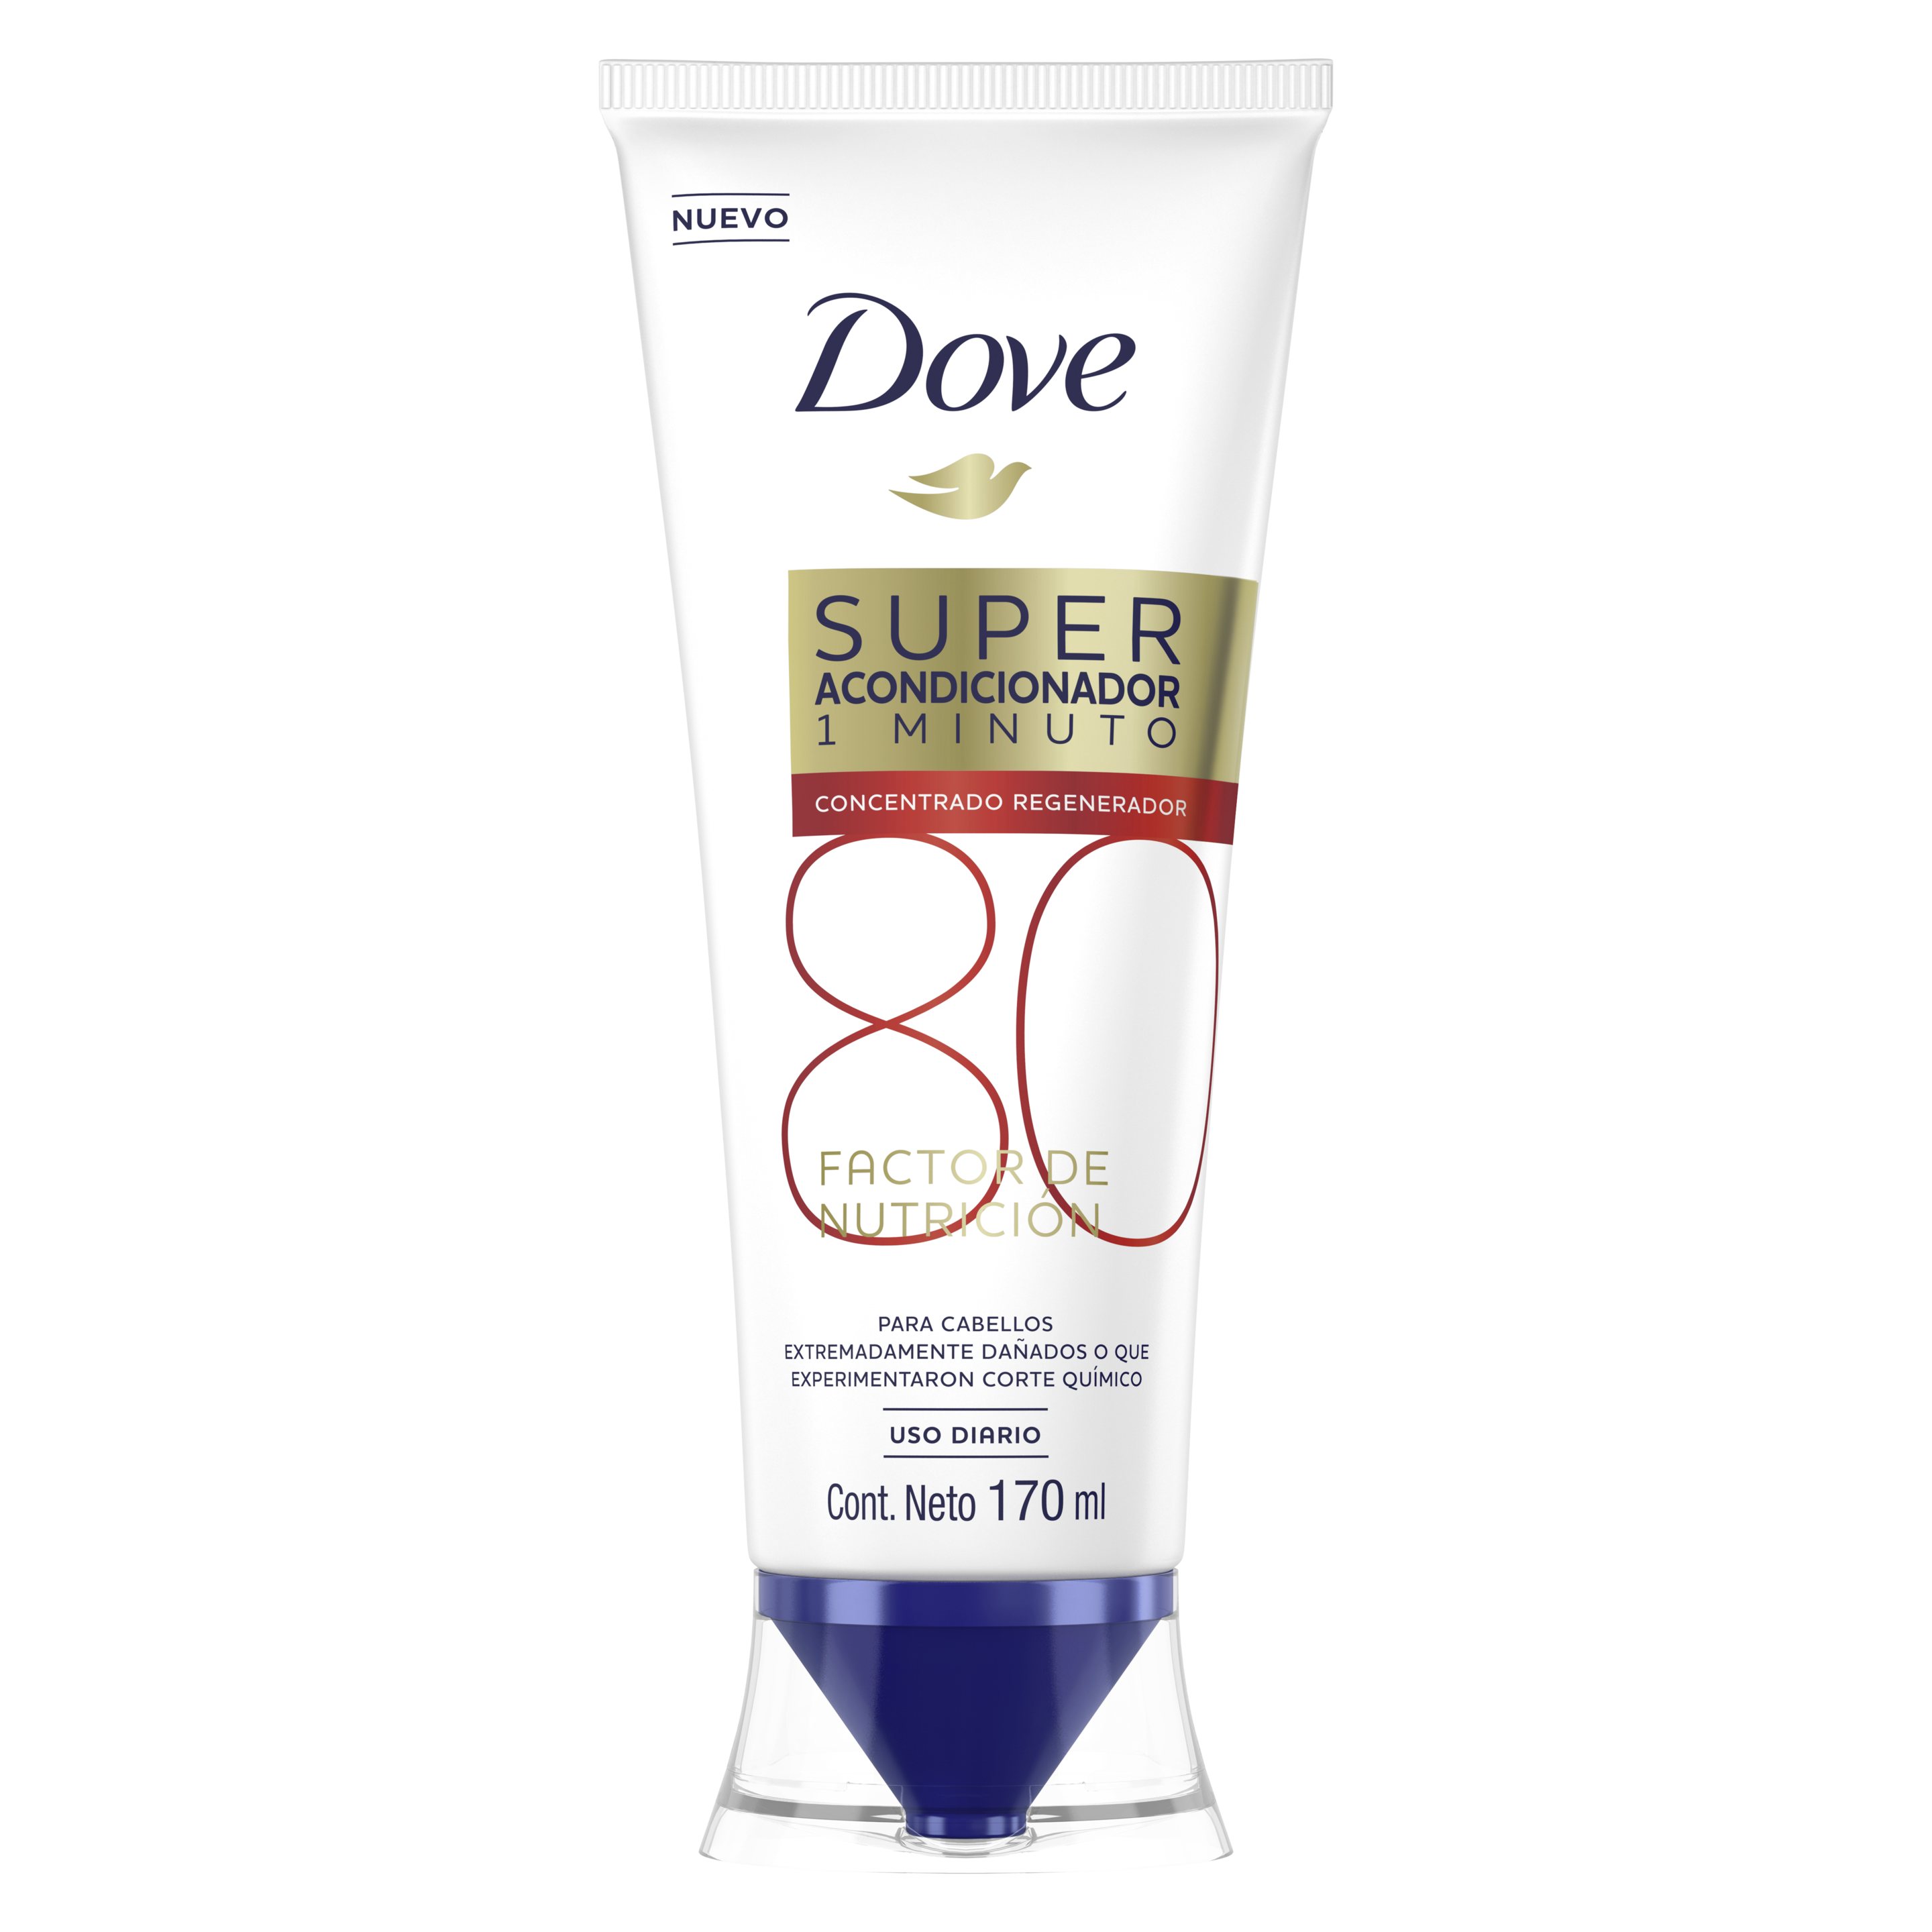 Dove Super Acondicionador 1 minuto Factor de Nutrición 80